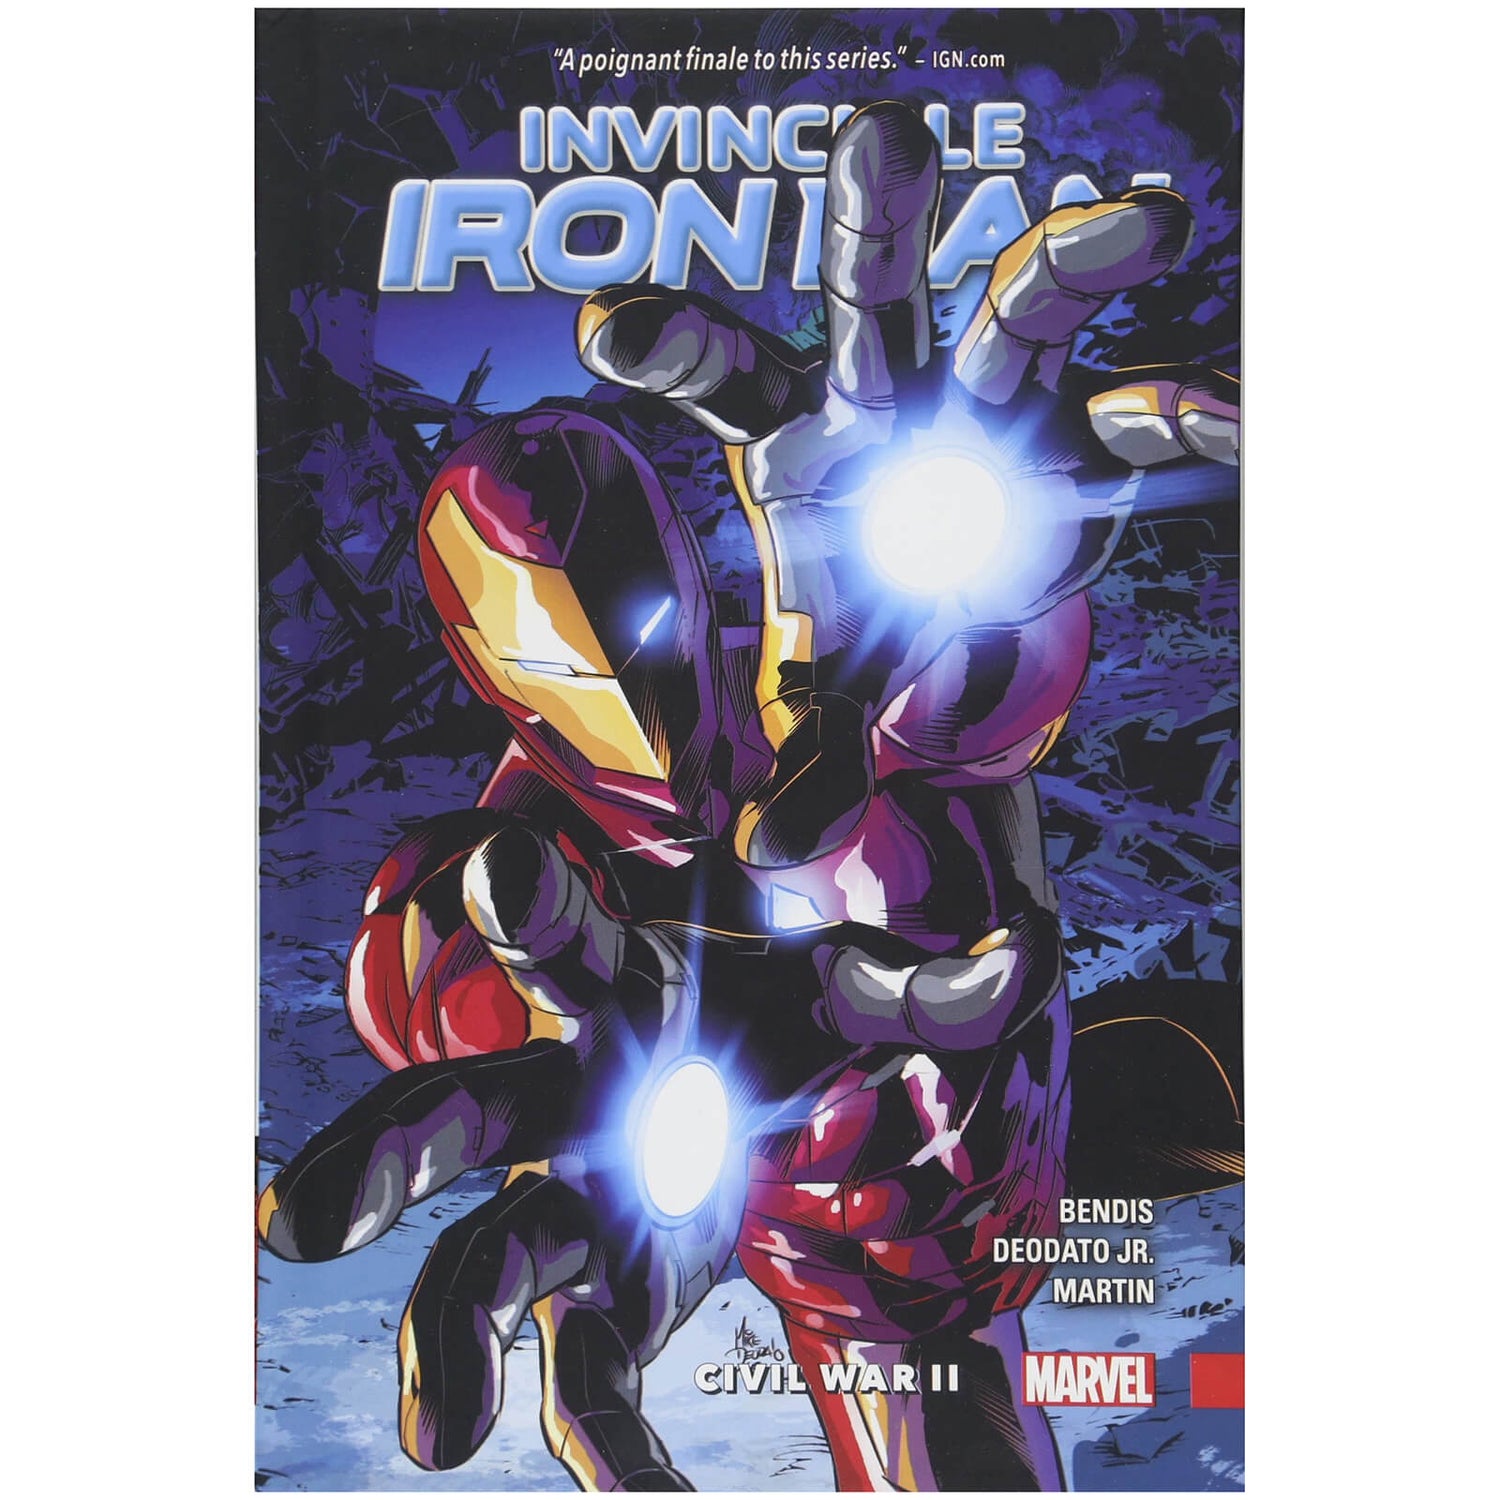 Marvel Comics Invincible Iron Man Trade Paperback Vol 03 Civil War Ii Graphic Novel